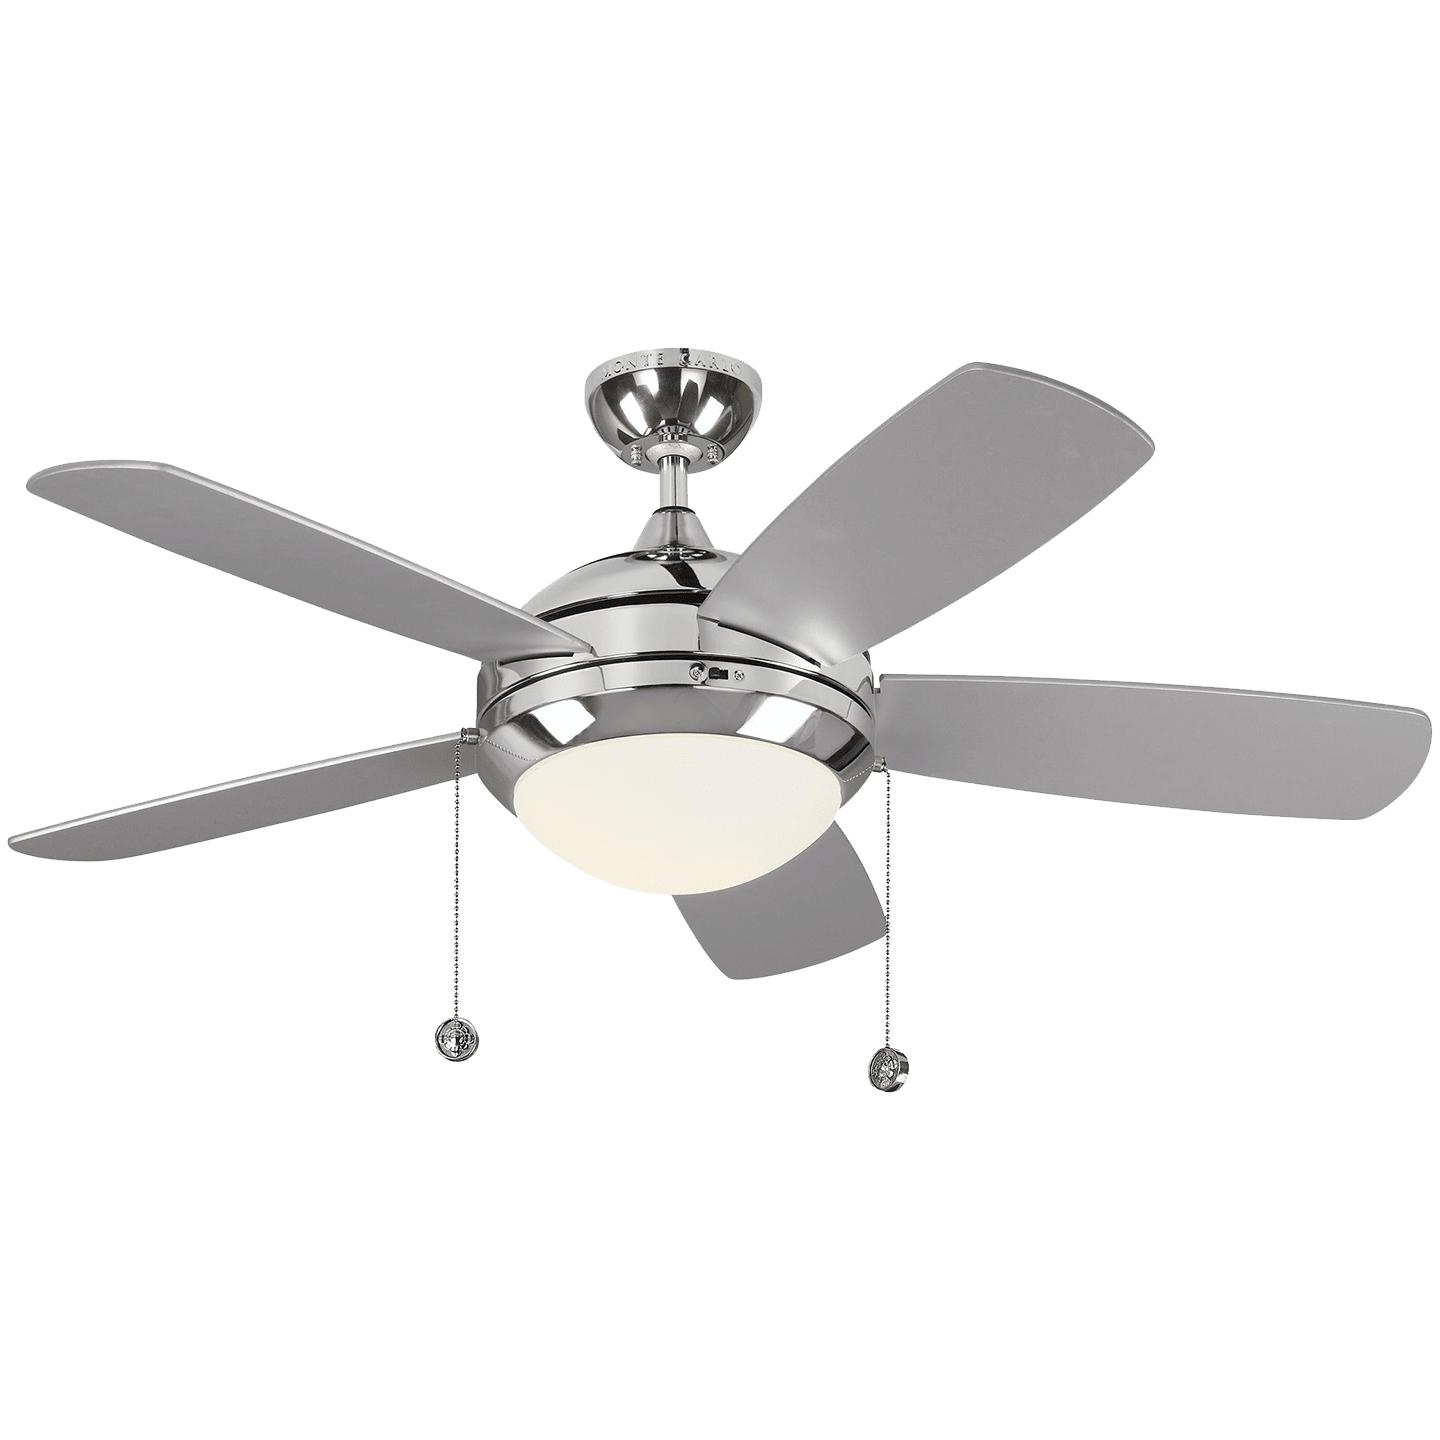 Купить Потолочный вентилятор Discus Classic 44" LED Ceiling Fan в интернет-магазине roooms.ru